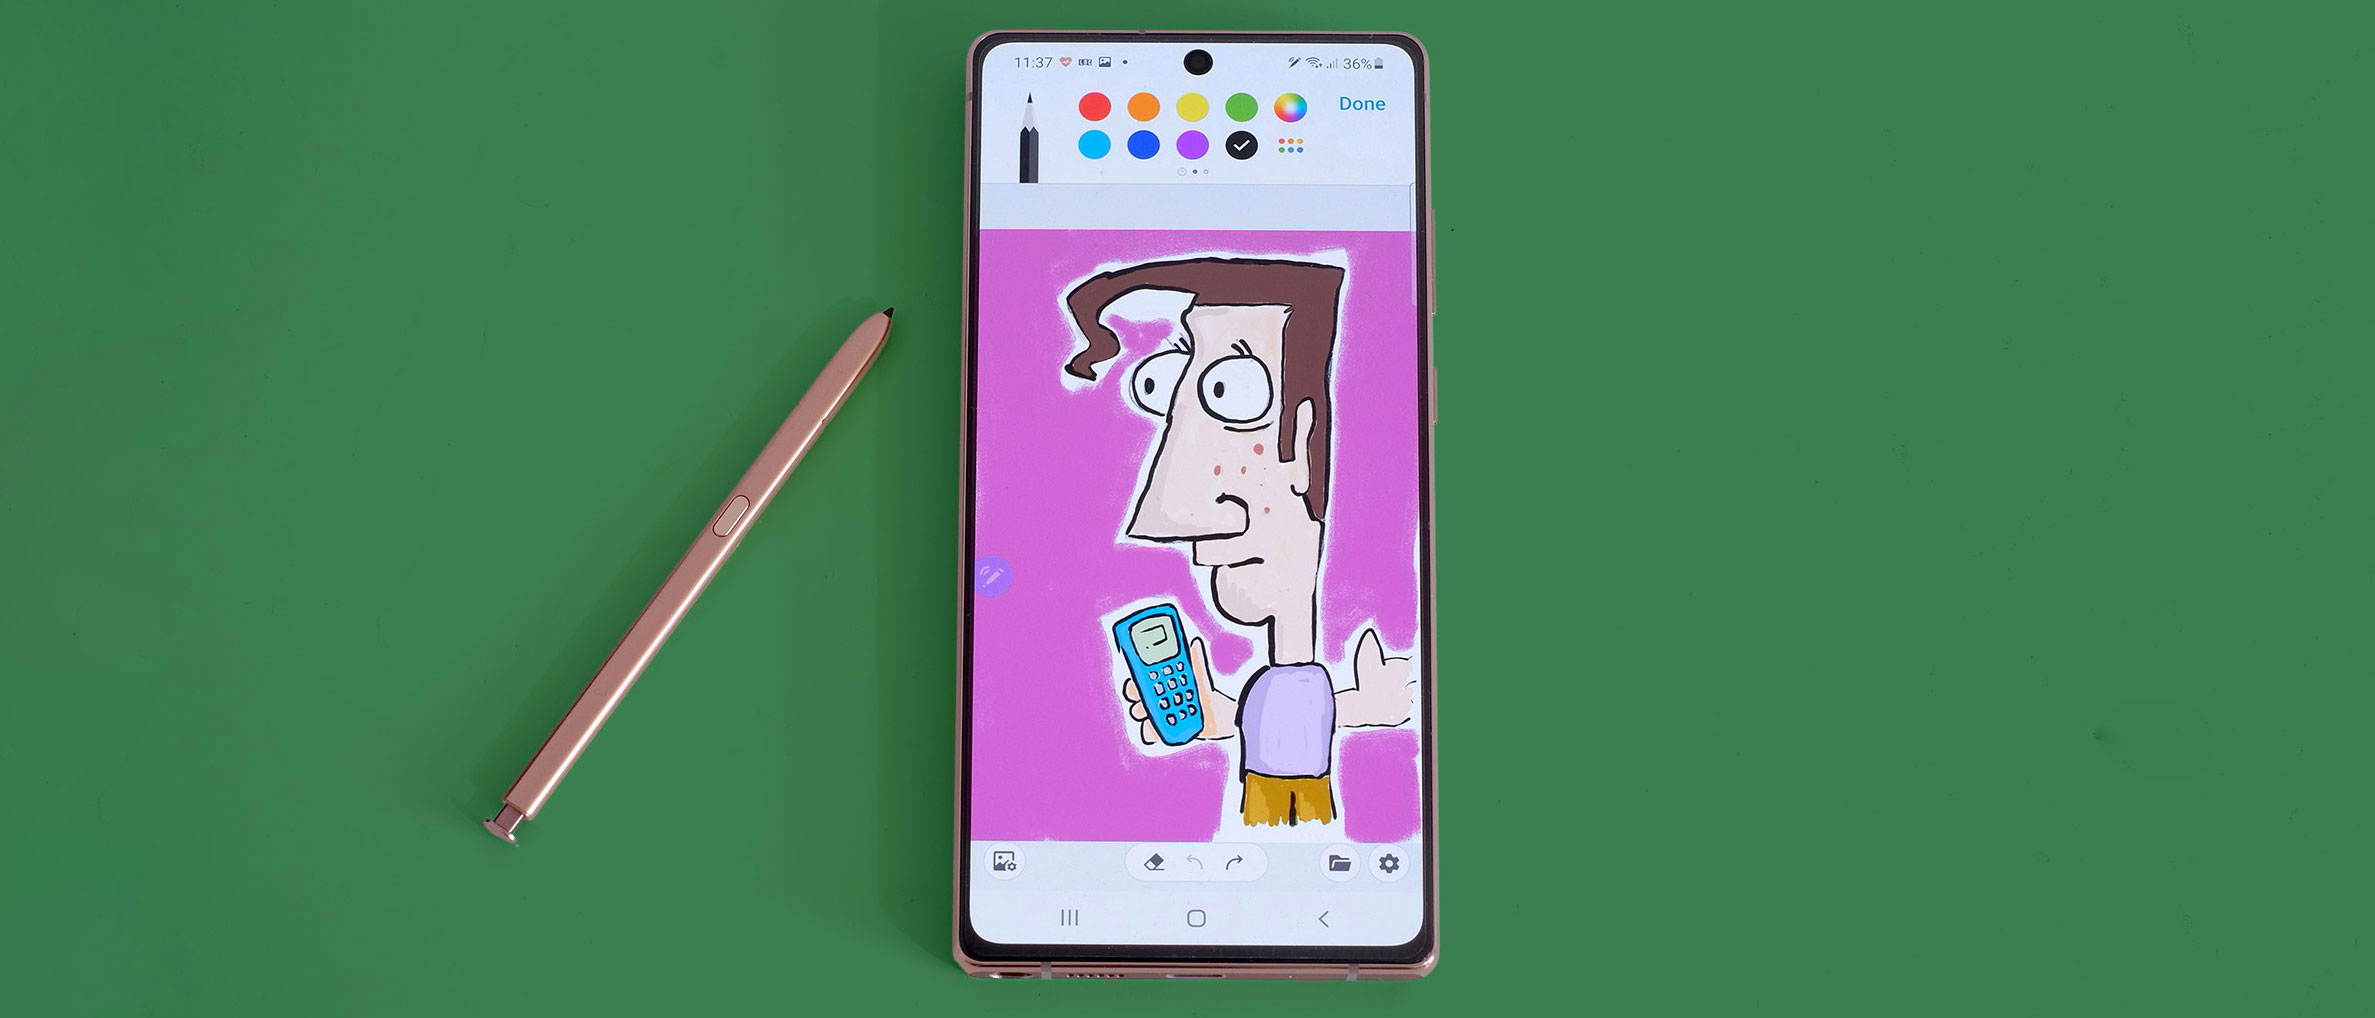 Bạn muốn biết thêm về Samsung Galaxy Note20? Xem những hình ảnh liên quan để tìm hiểu về tính năng và thiết kế của chiếc điện thoại này. Đánh giá tích cực từ các chuyên gia sẽ giúp bạn lựa chọn sản phẩm phù hợp nhất.